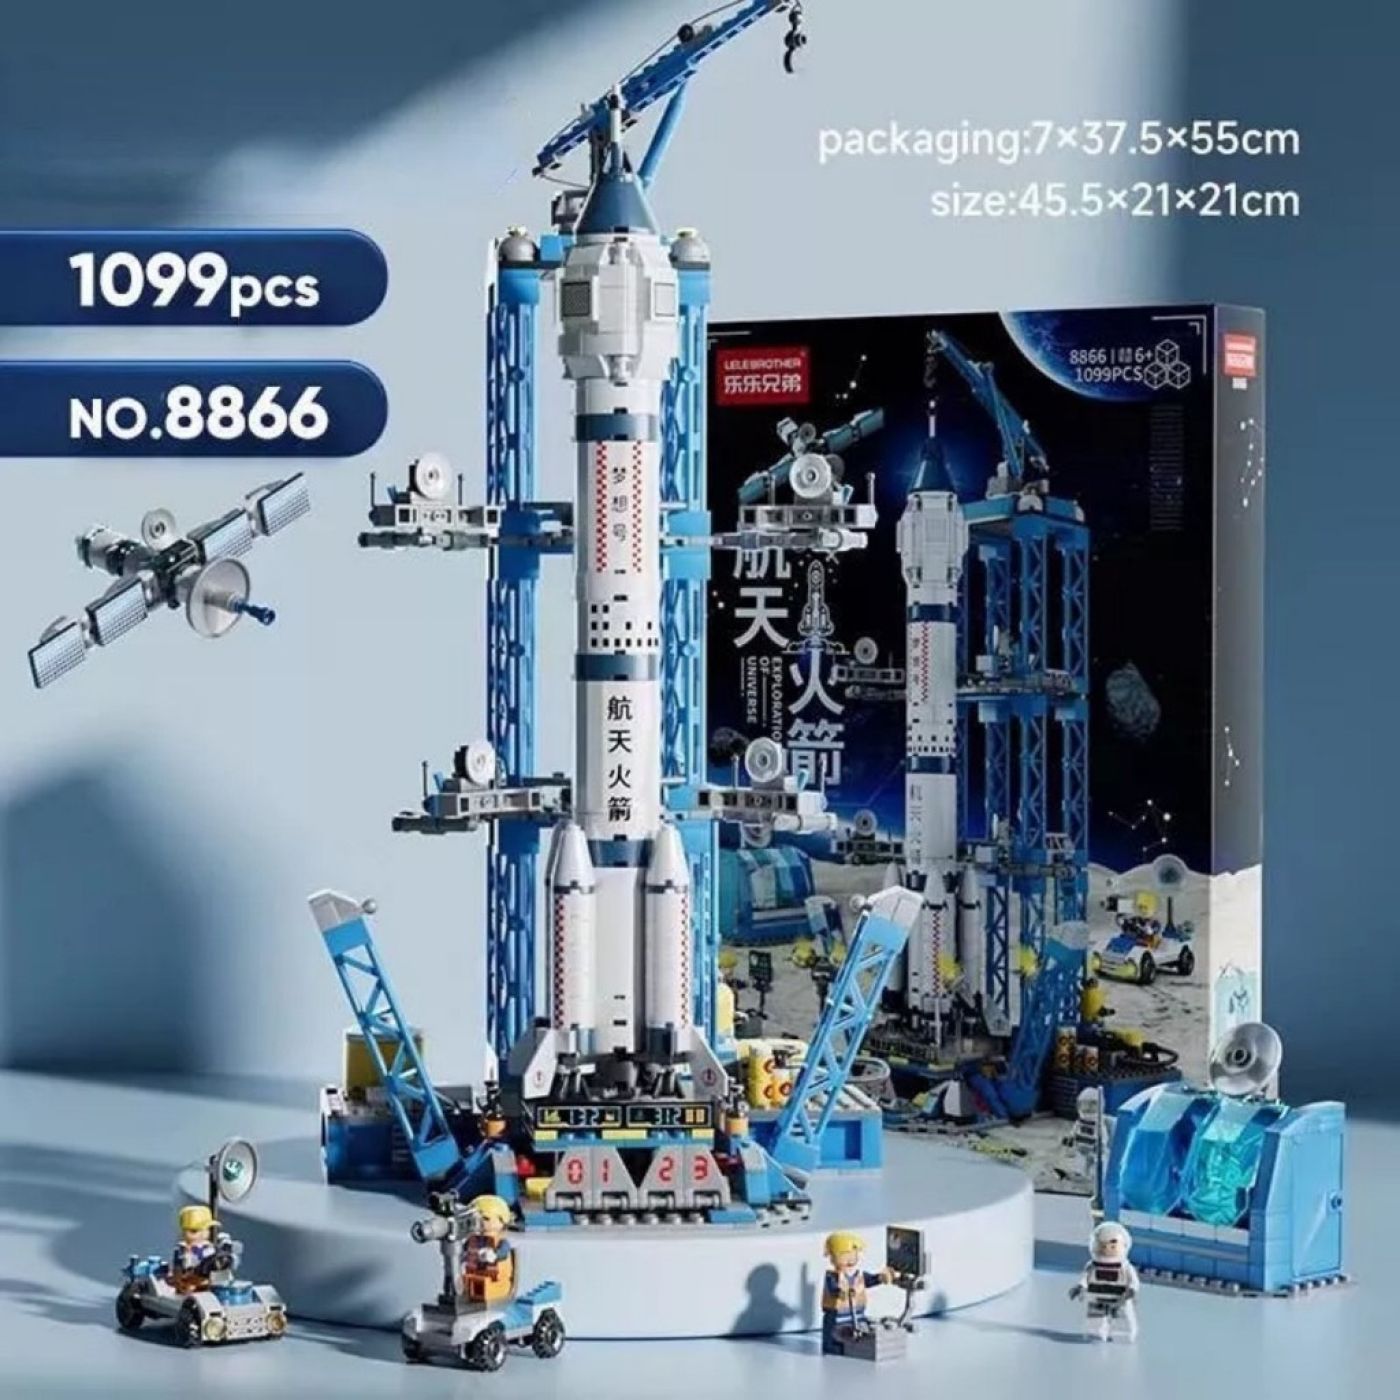 Bộ đồ chơi LEGO Lắp ghép Tàu vũ trụ 1093 chi tiết full hộp giấy có quai xách mã 8866